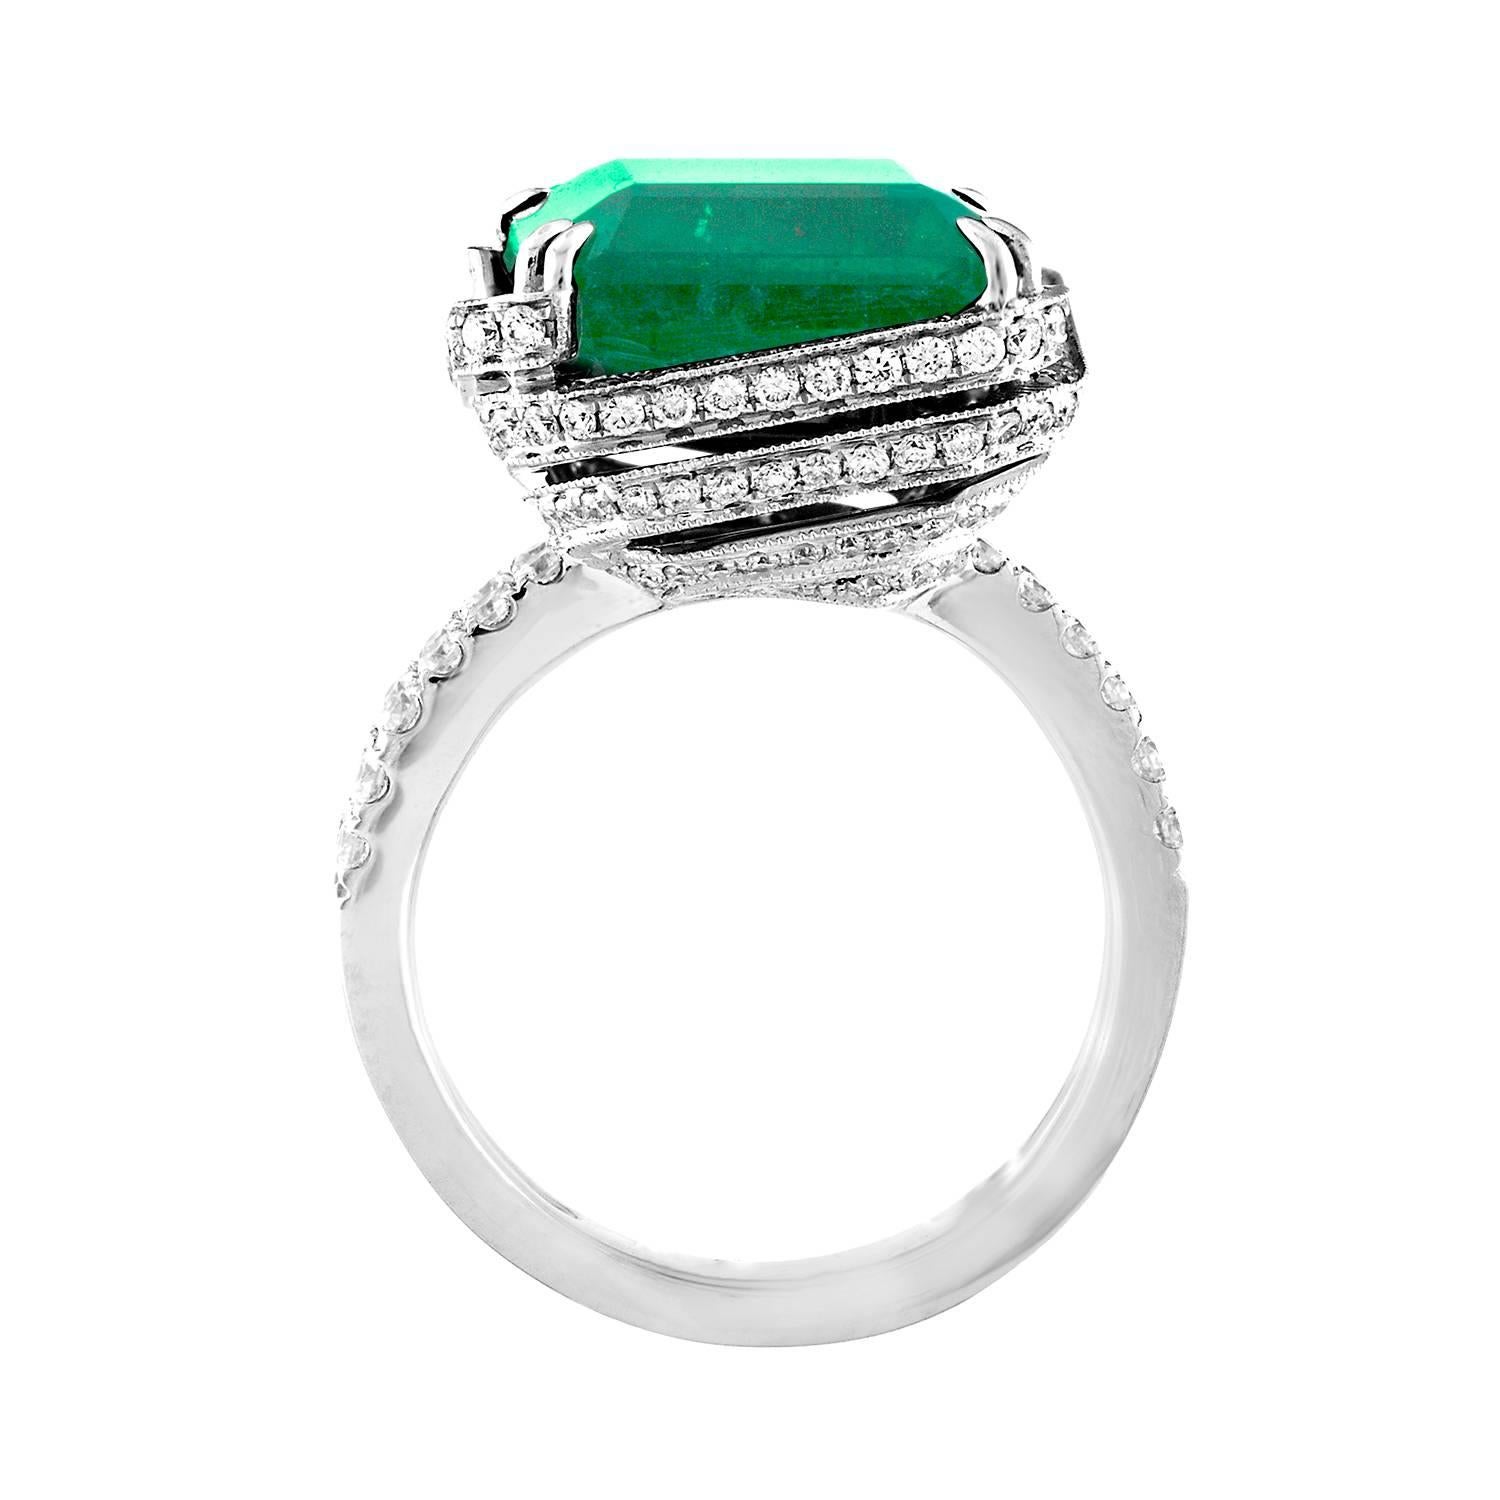 Abwandlung des klassischen Smaragdrings
Der Ring ist 18K Weißgold
Der Smaragd ist 8,81 Karat im Smaragdschliff
Der Emerald ist nur für die AGL-zertifizierte Ölbehandlung geeignet
Der Smaragd ist aus Brasilien
Es sind 1,16 Karat in Diamanten F/G